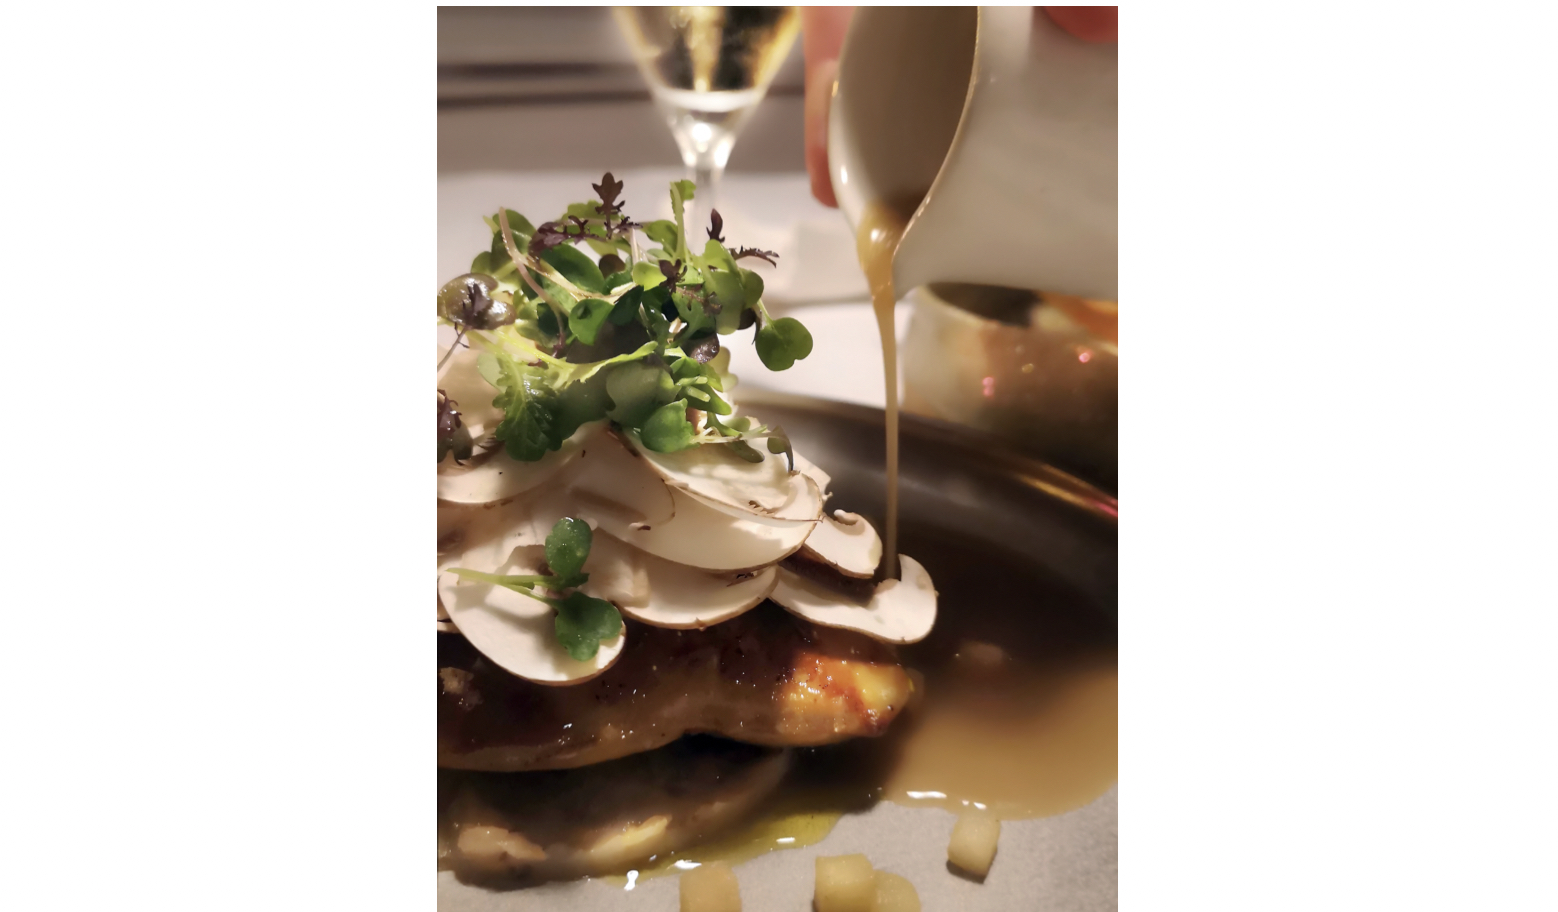 Le foie gras de canard poêlé, oignon doux et anguille fumée, plas d'hiver de Thomas L'Hérisson. (L'AUBERGE DE SAINT-JEAN)